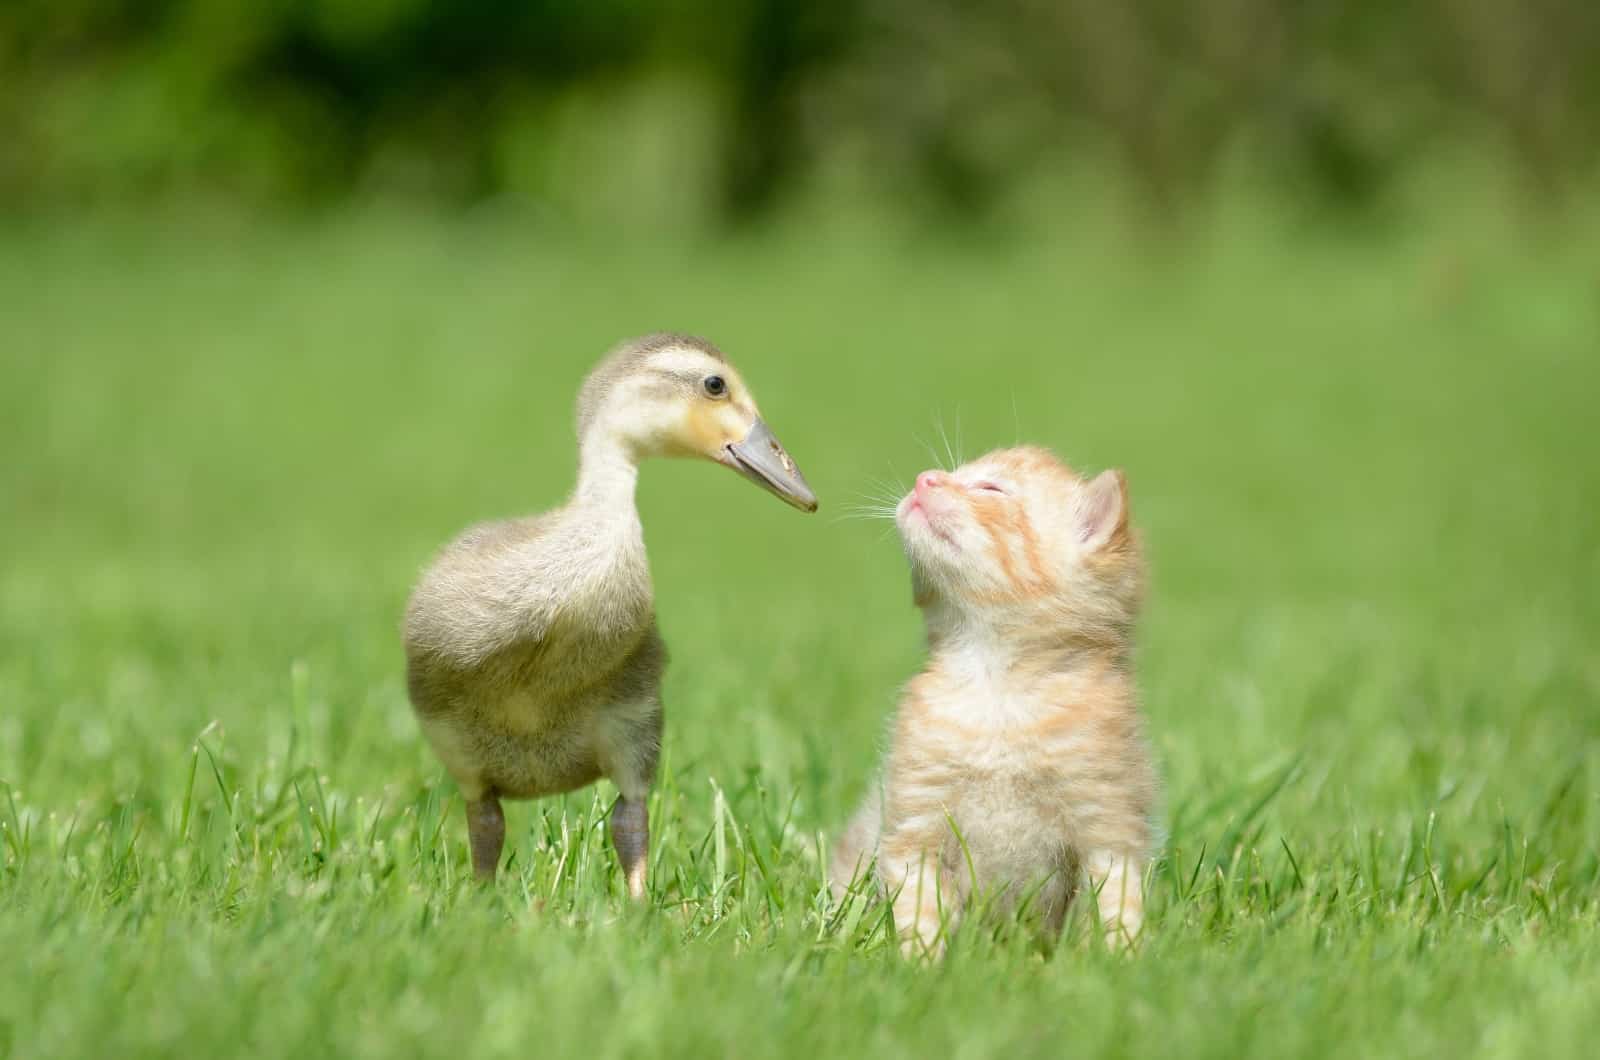 little kitten and duck standing on grass